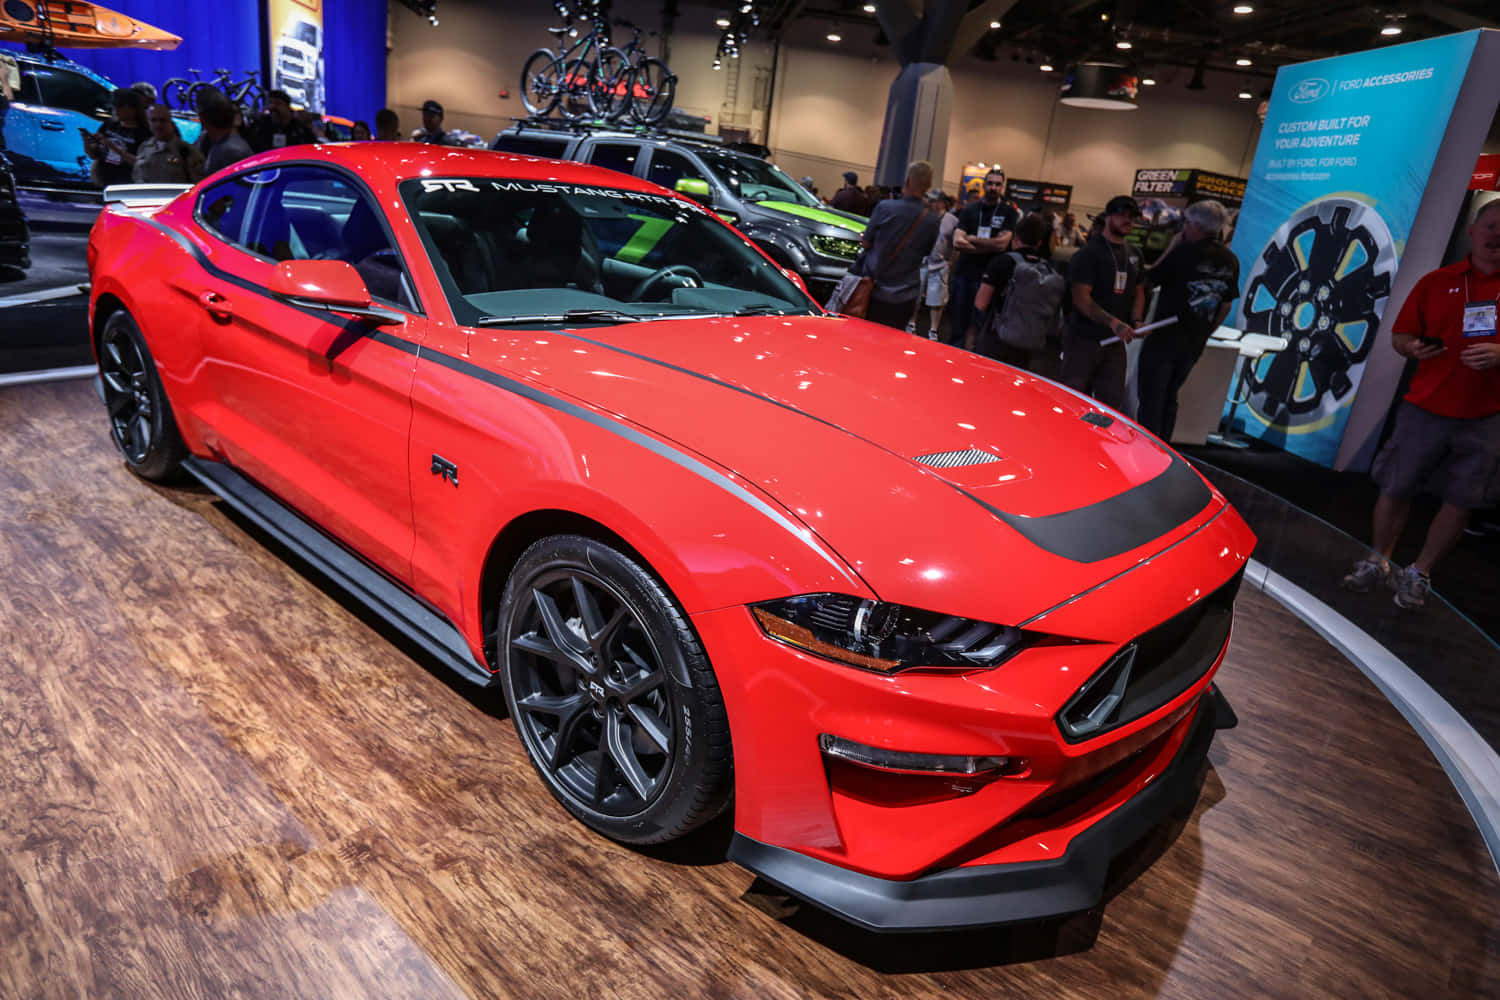 Velocidadee Estilo: O Mustang